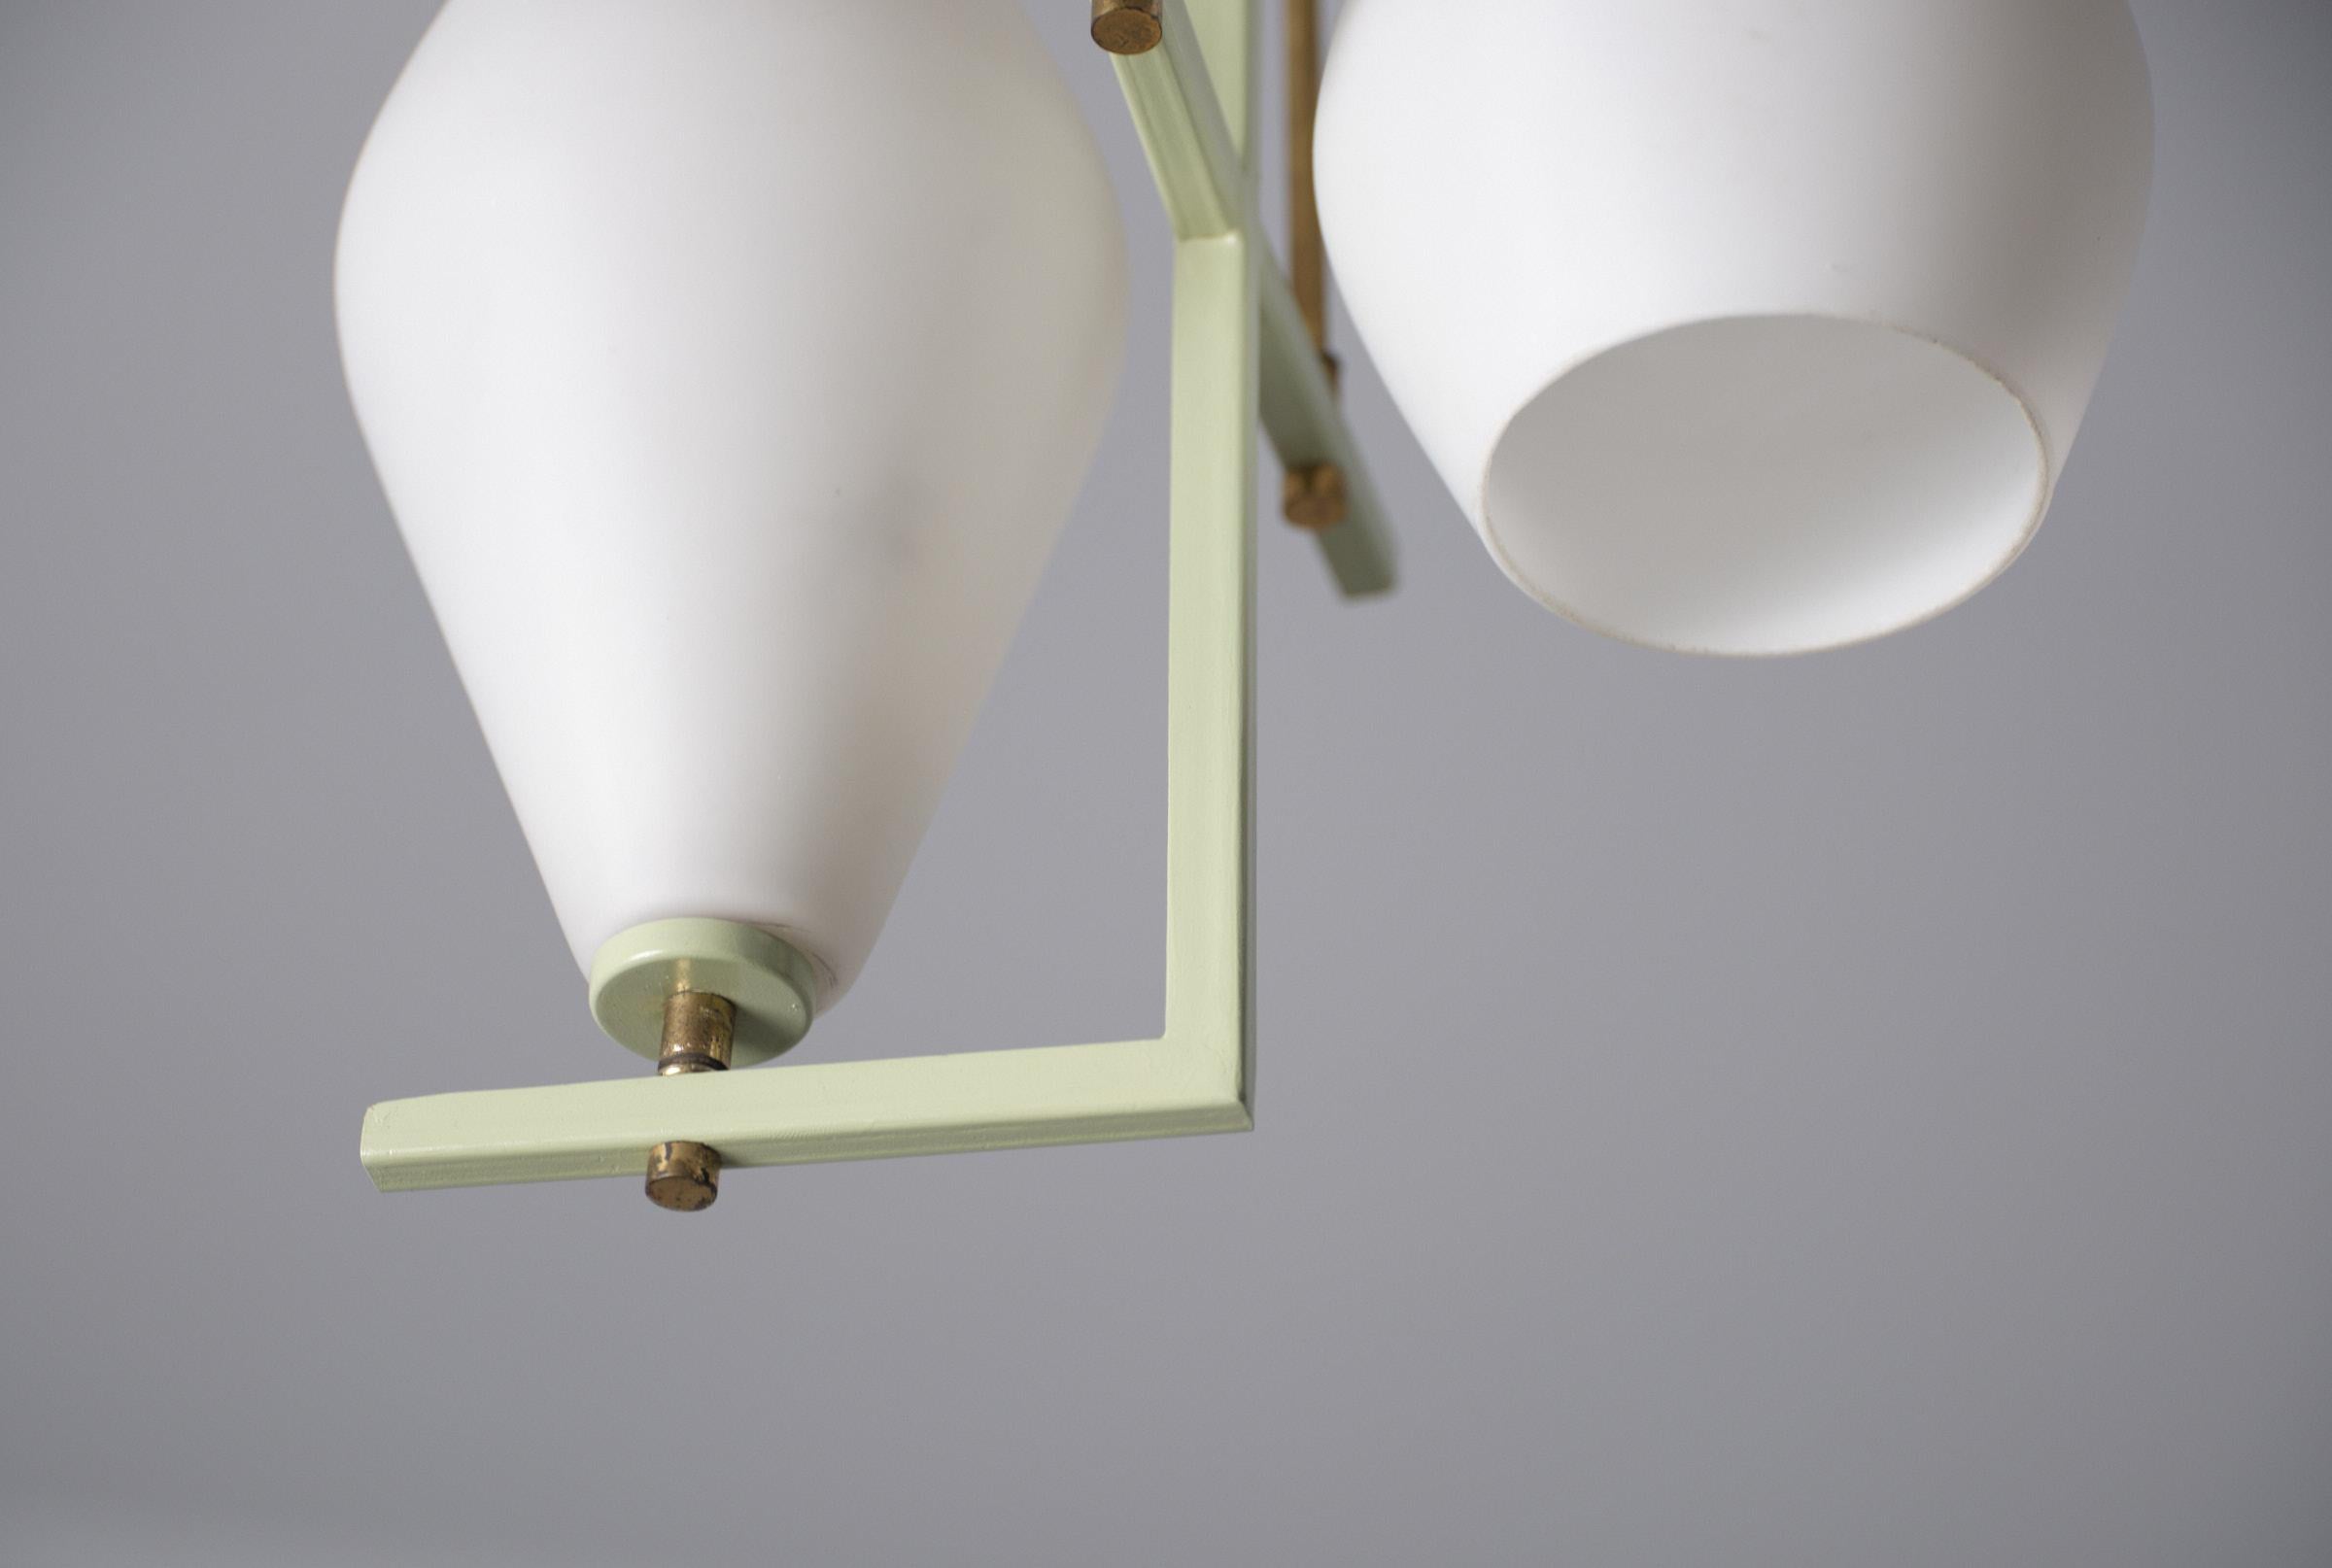 L'offre porte sur un exquis lustre suspendu italien, une pièce authentique du mouvement de design moderne des années 1950. Le lustre présente une armature en fer laqué vert sauge, rehaussée de détails en laiton portant la patine d'origine, ce qui